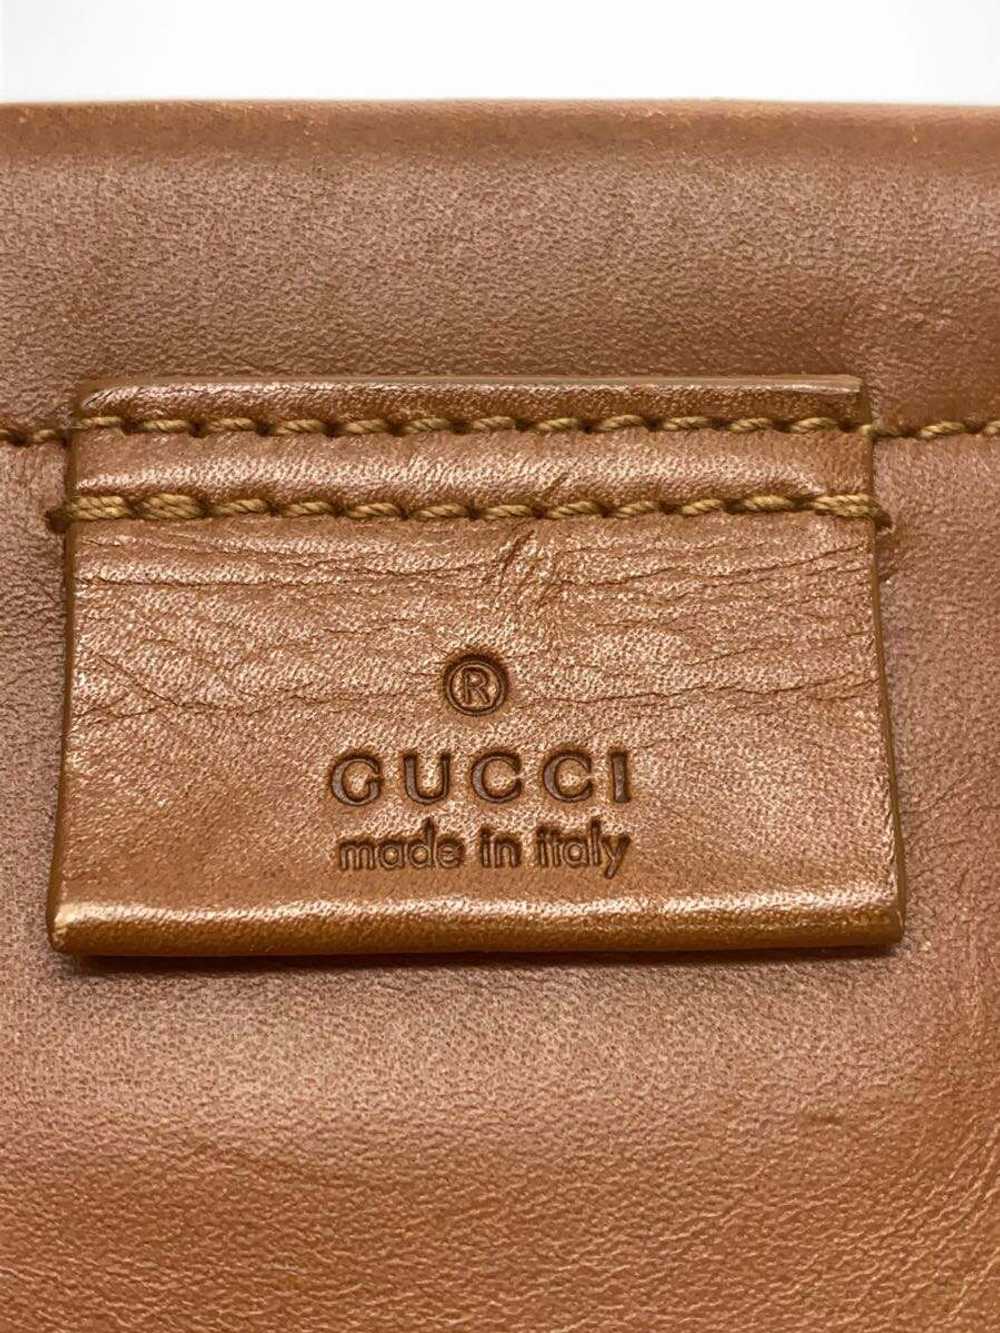 Used Gucci Handbag/--/Ivo/94899 002214/Old Gucci/… - image 5